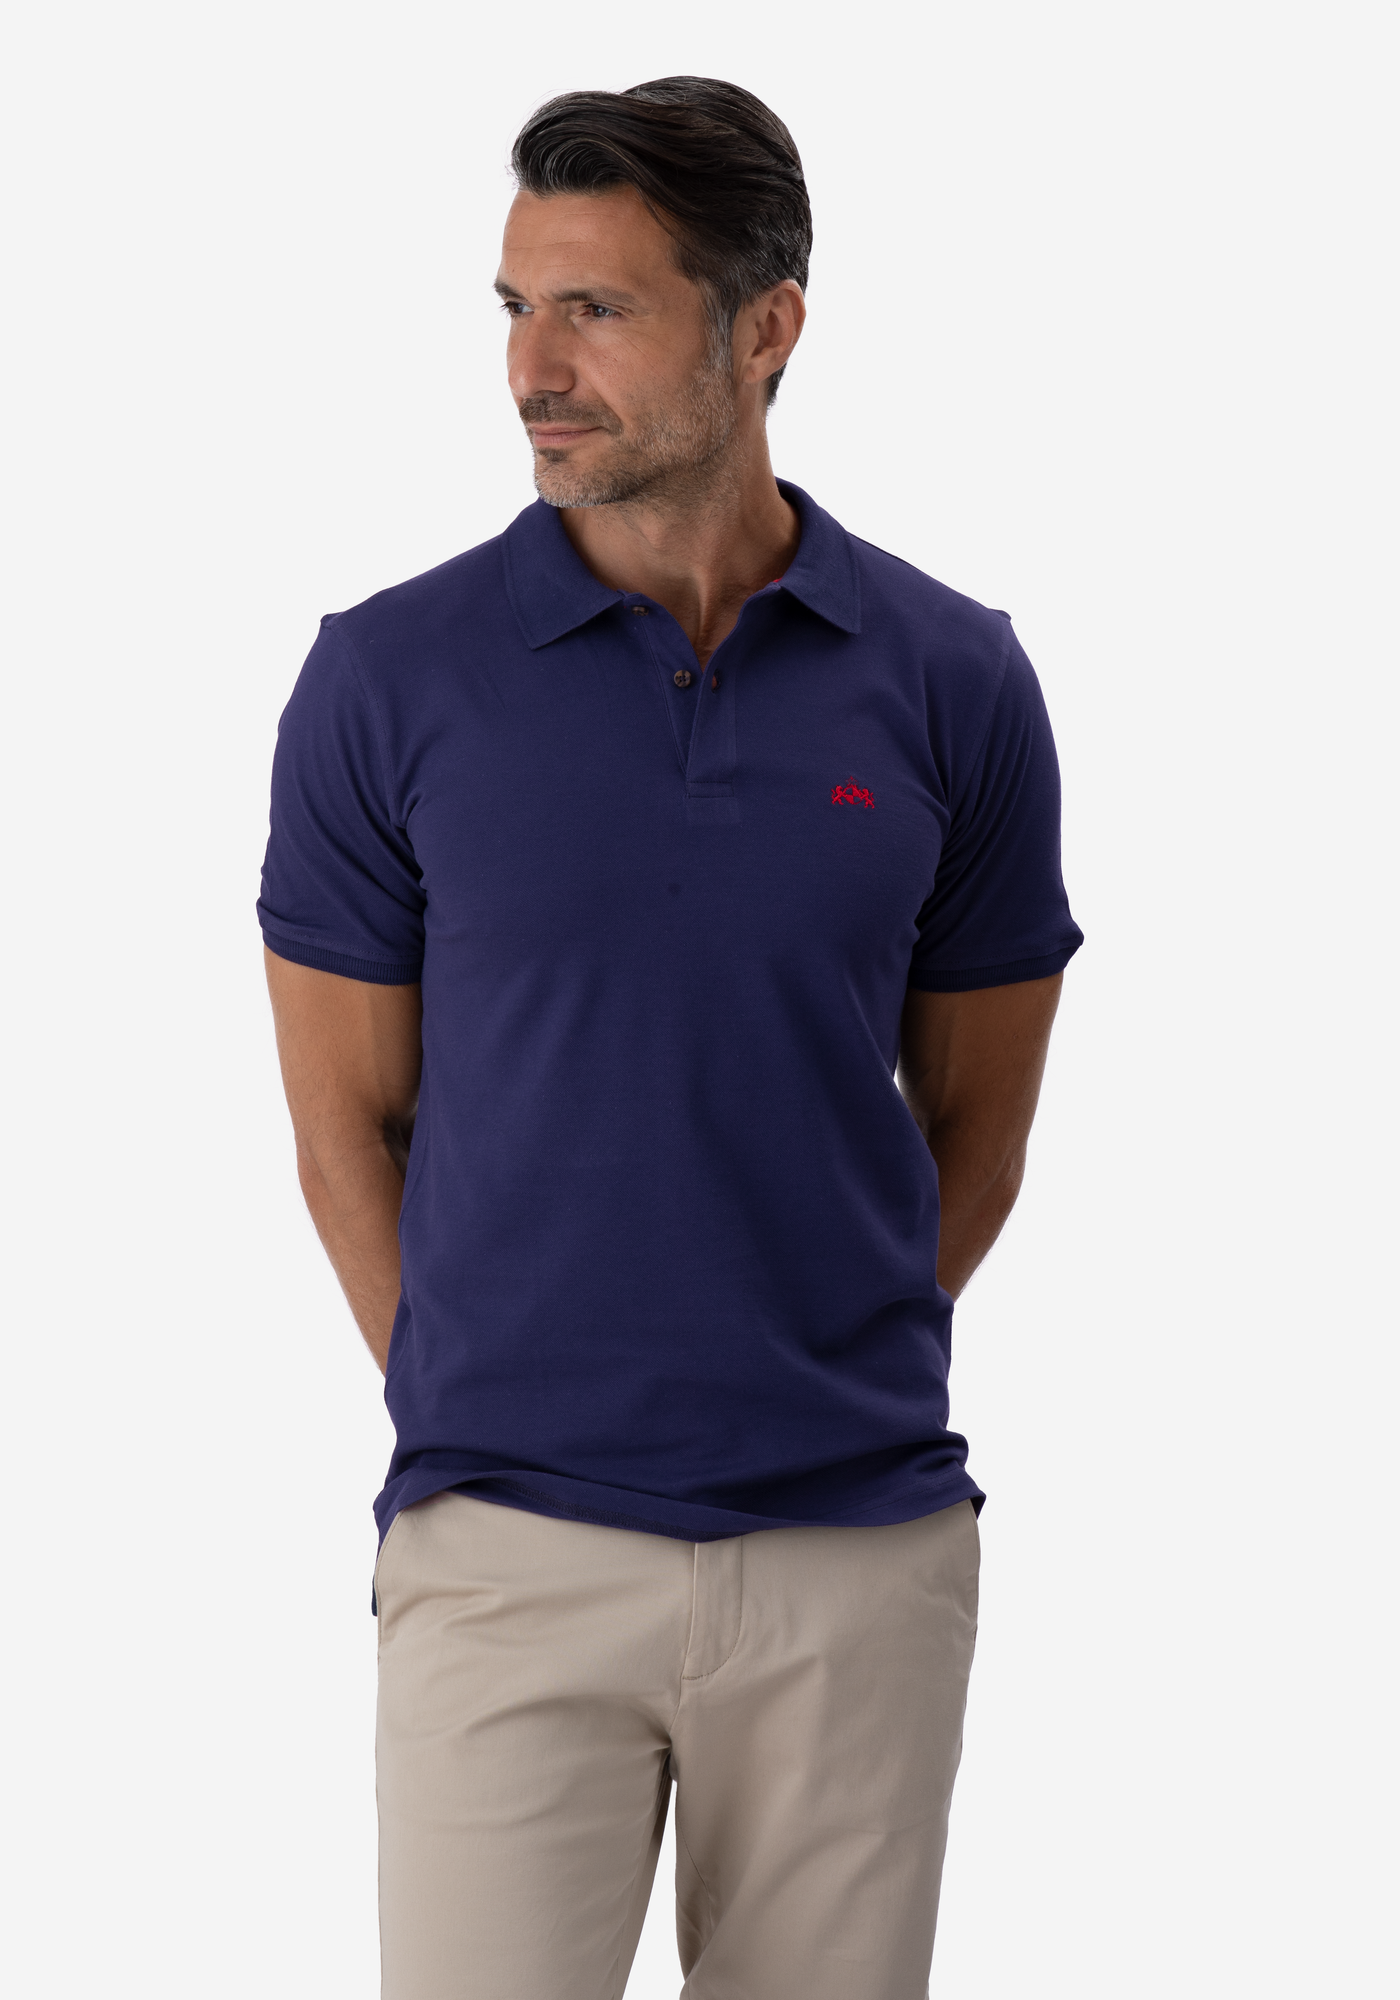 Navy Cotton Lycra Polo Shirt